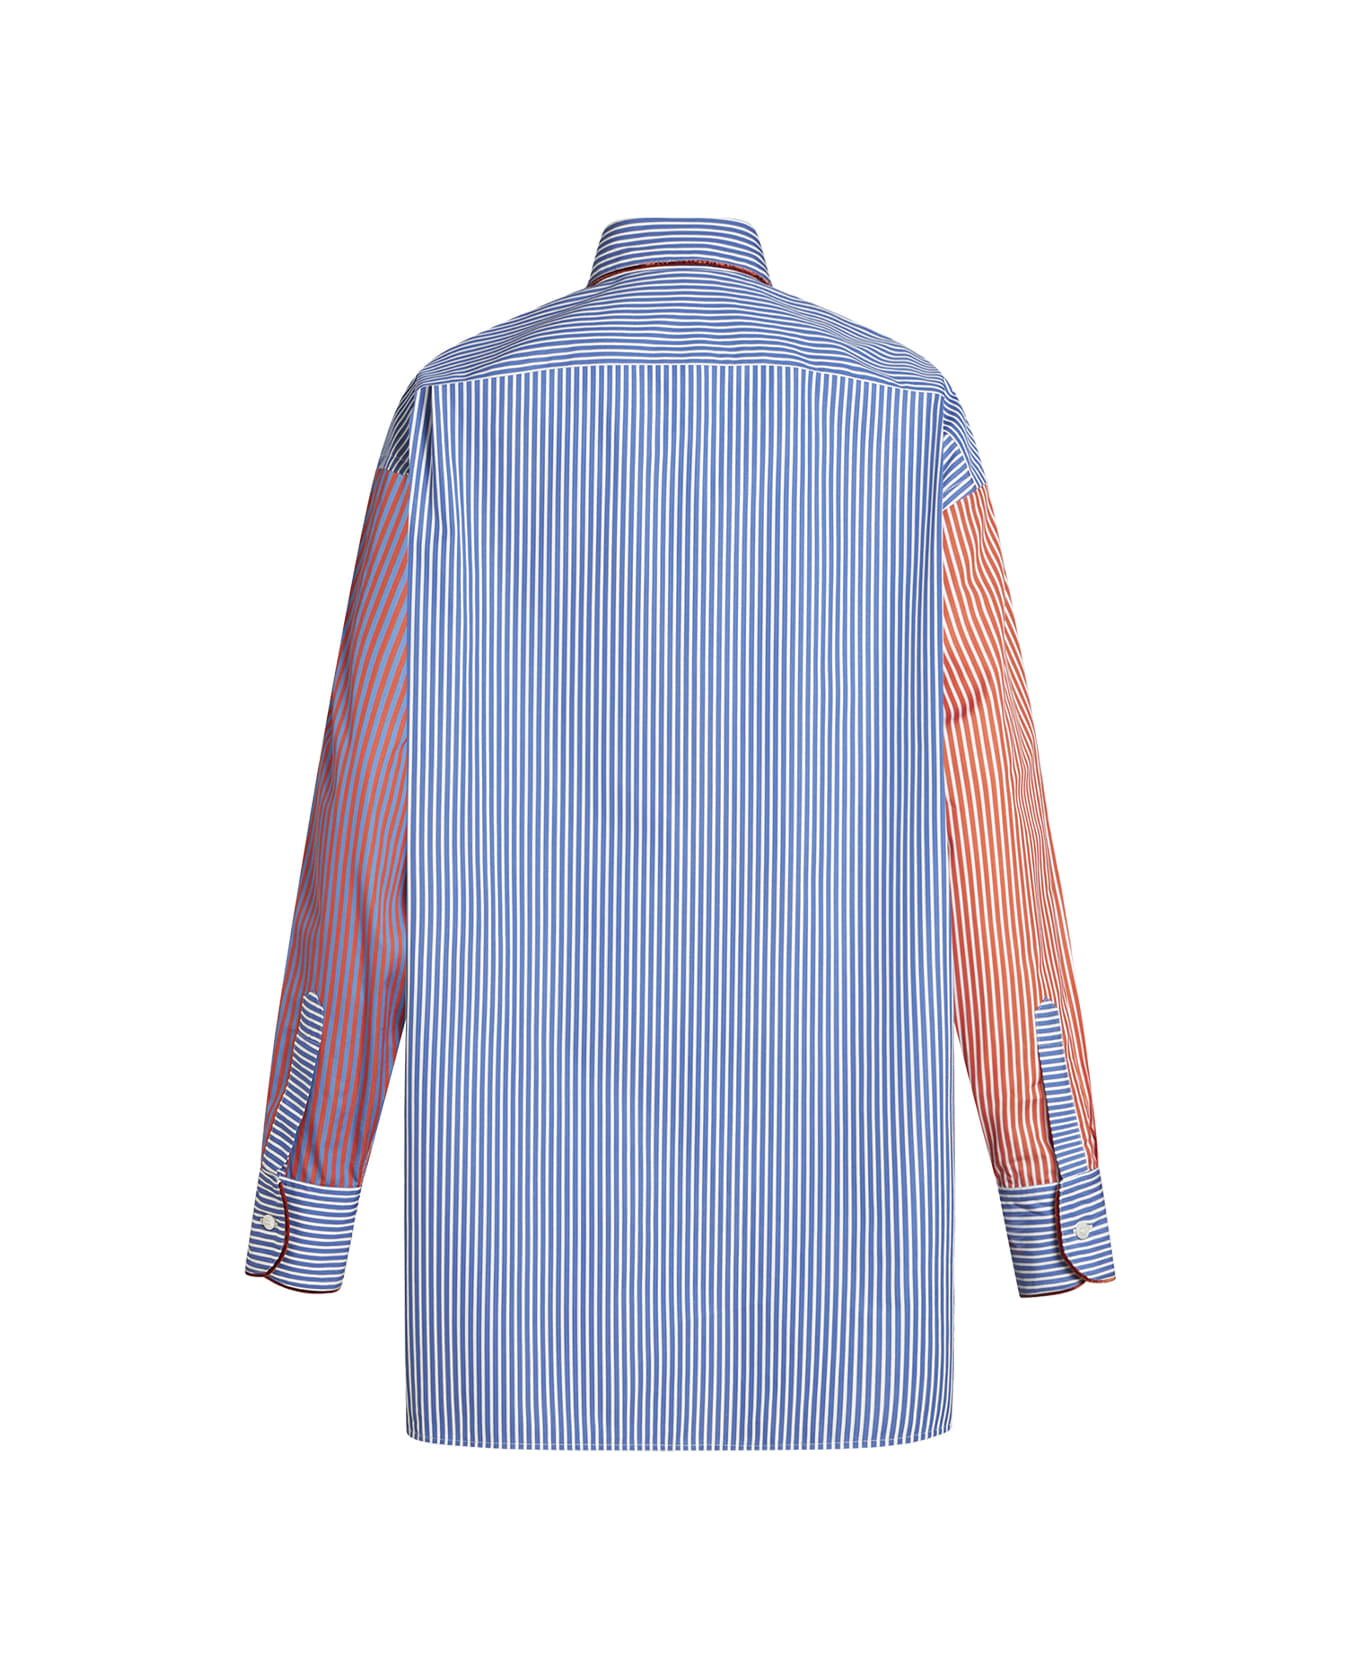 Etro Multicolored Striped Cotton Shirt - Multicolour シャツ